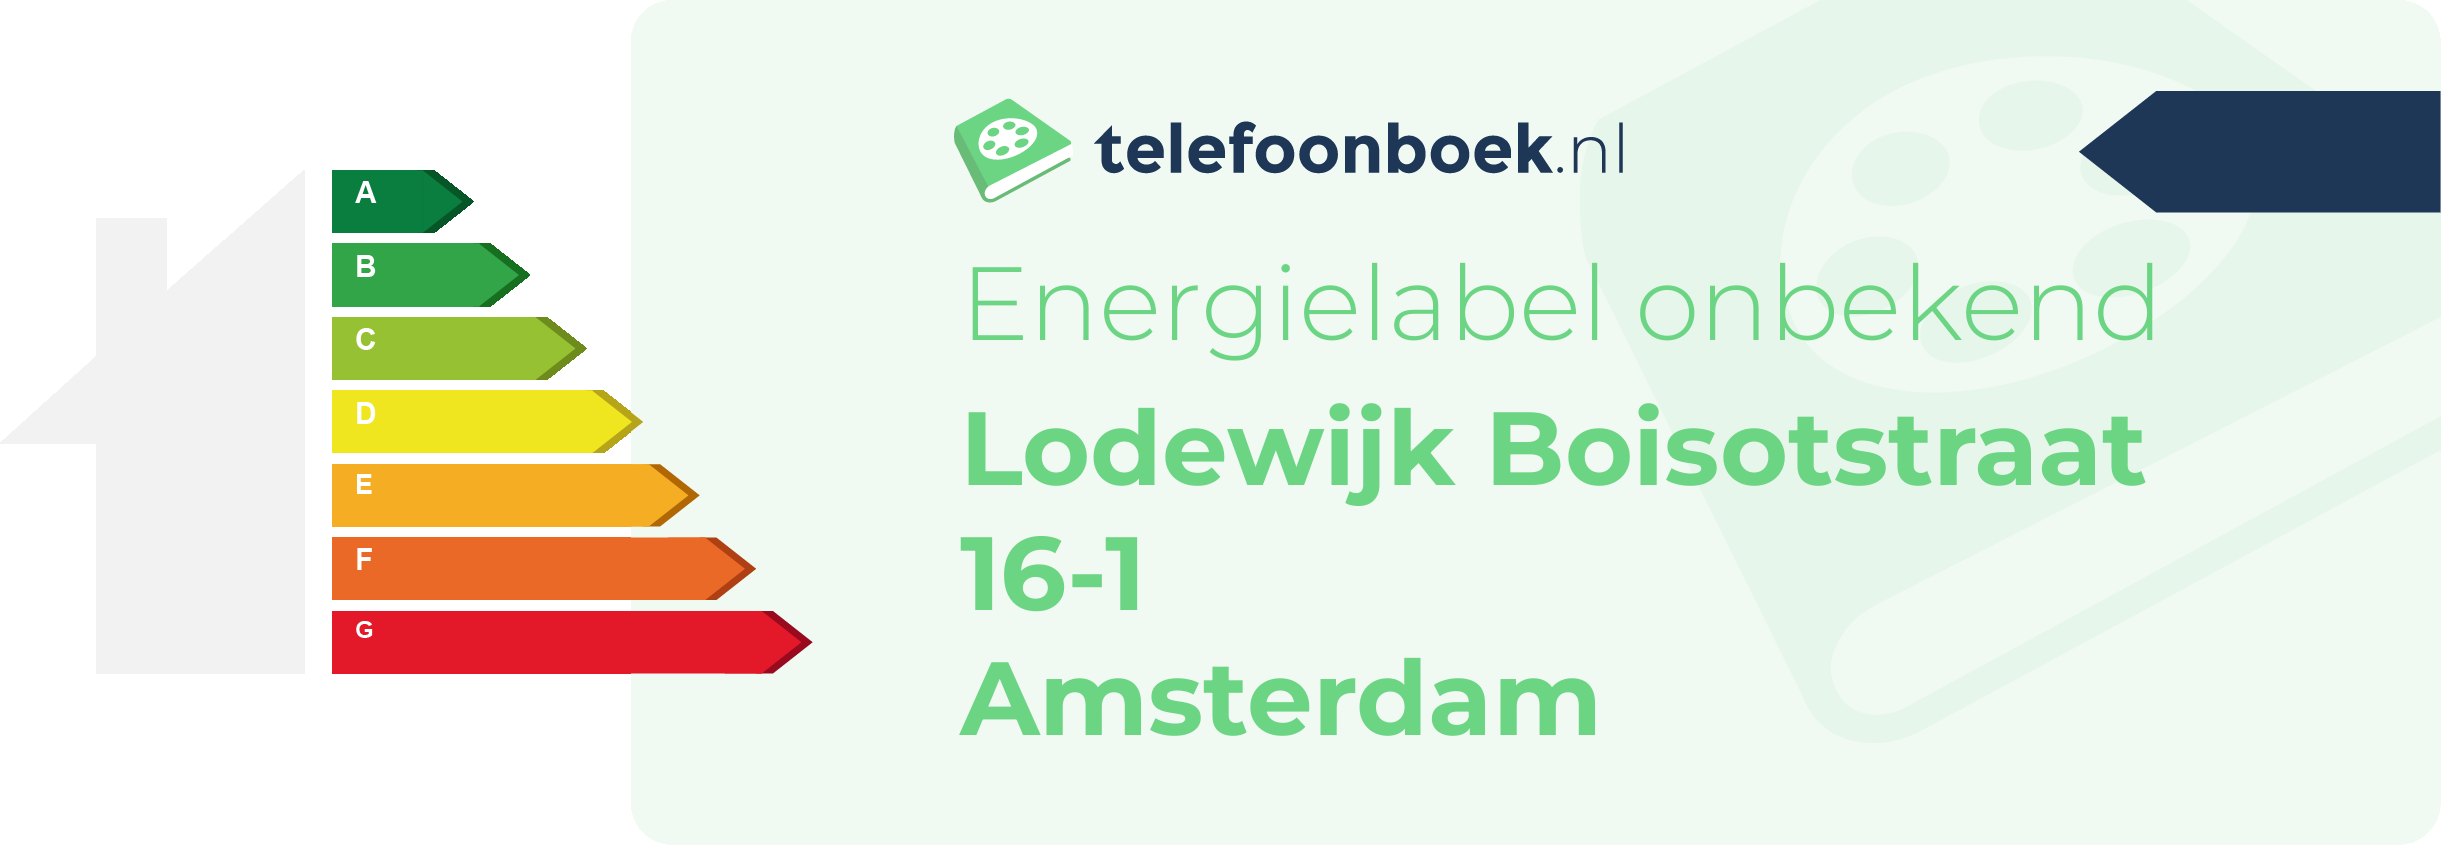 Energielabel Lodewijk Boisotstraat 16-1 Amsterdam